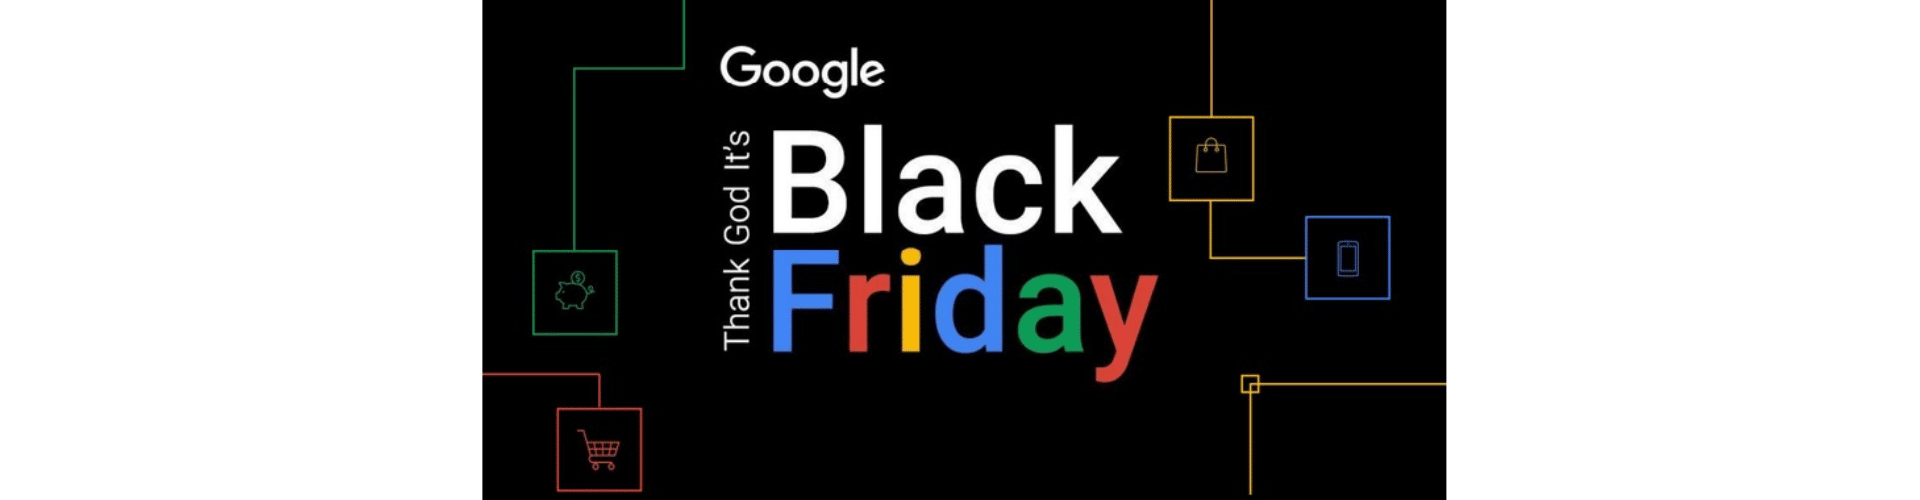 Tu guía definitiva para triunfar en Black Friday con Google Ads (en tu ecommerce)